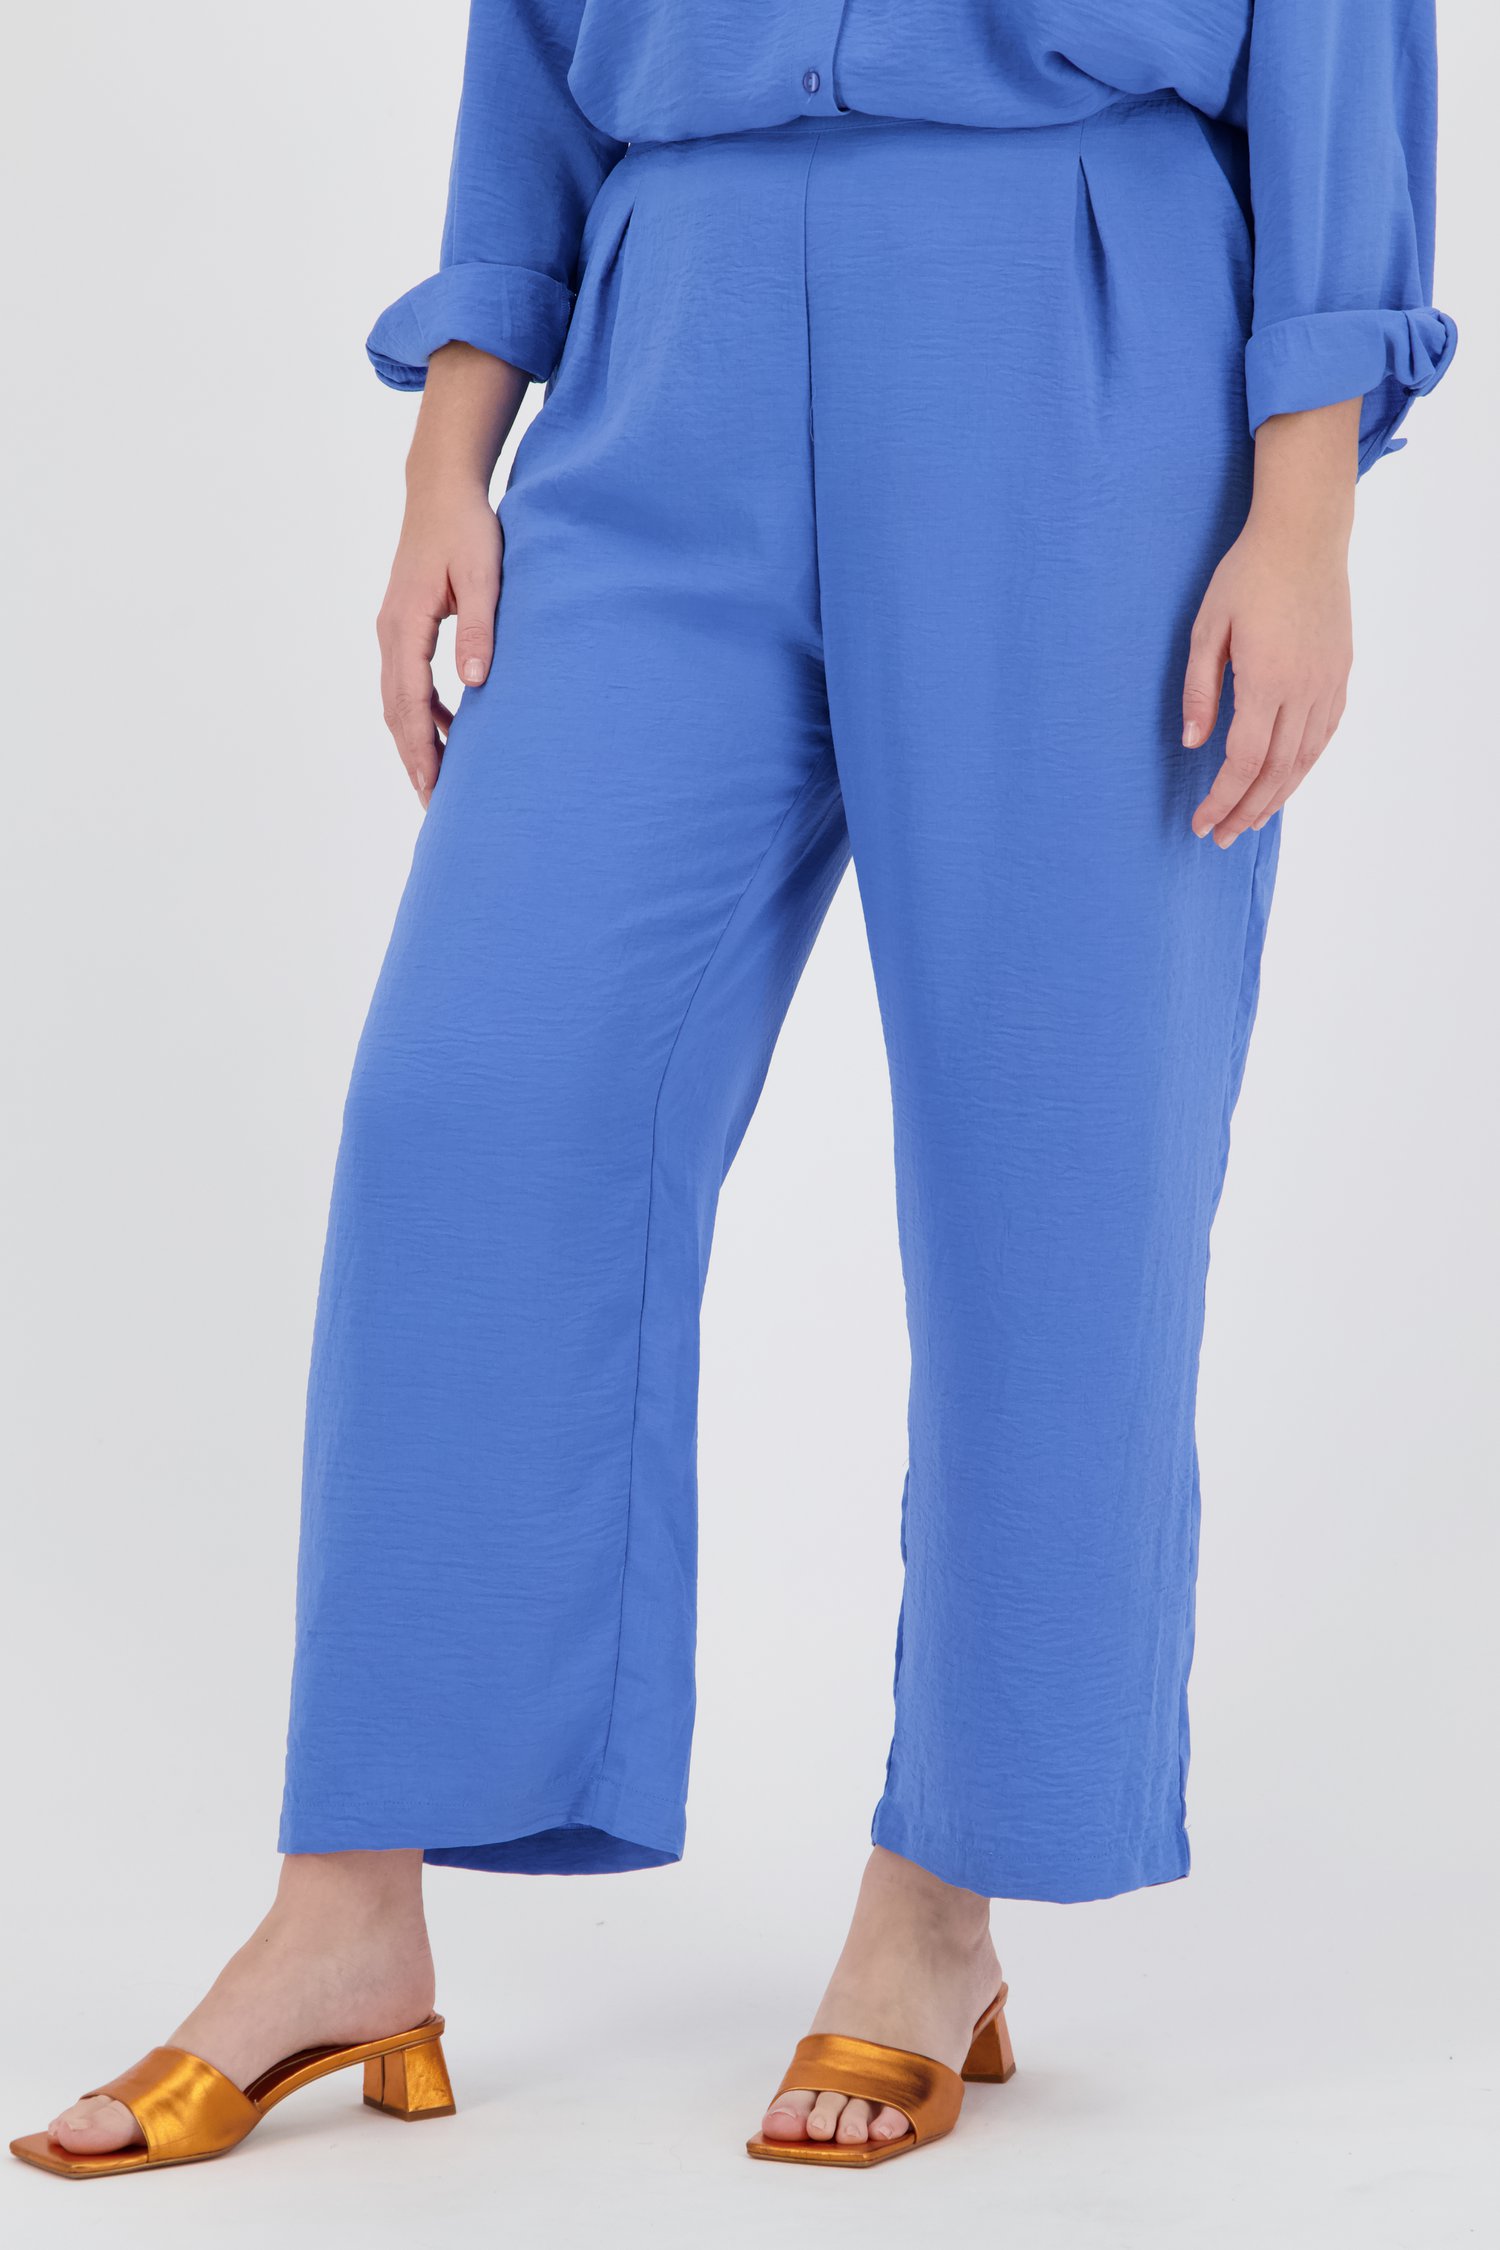 Malawi baai Brood Wijde blauwe broek met elastische taille van Only Carmakoma | 9785882 | e5